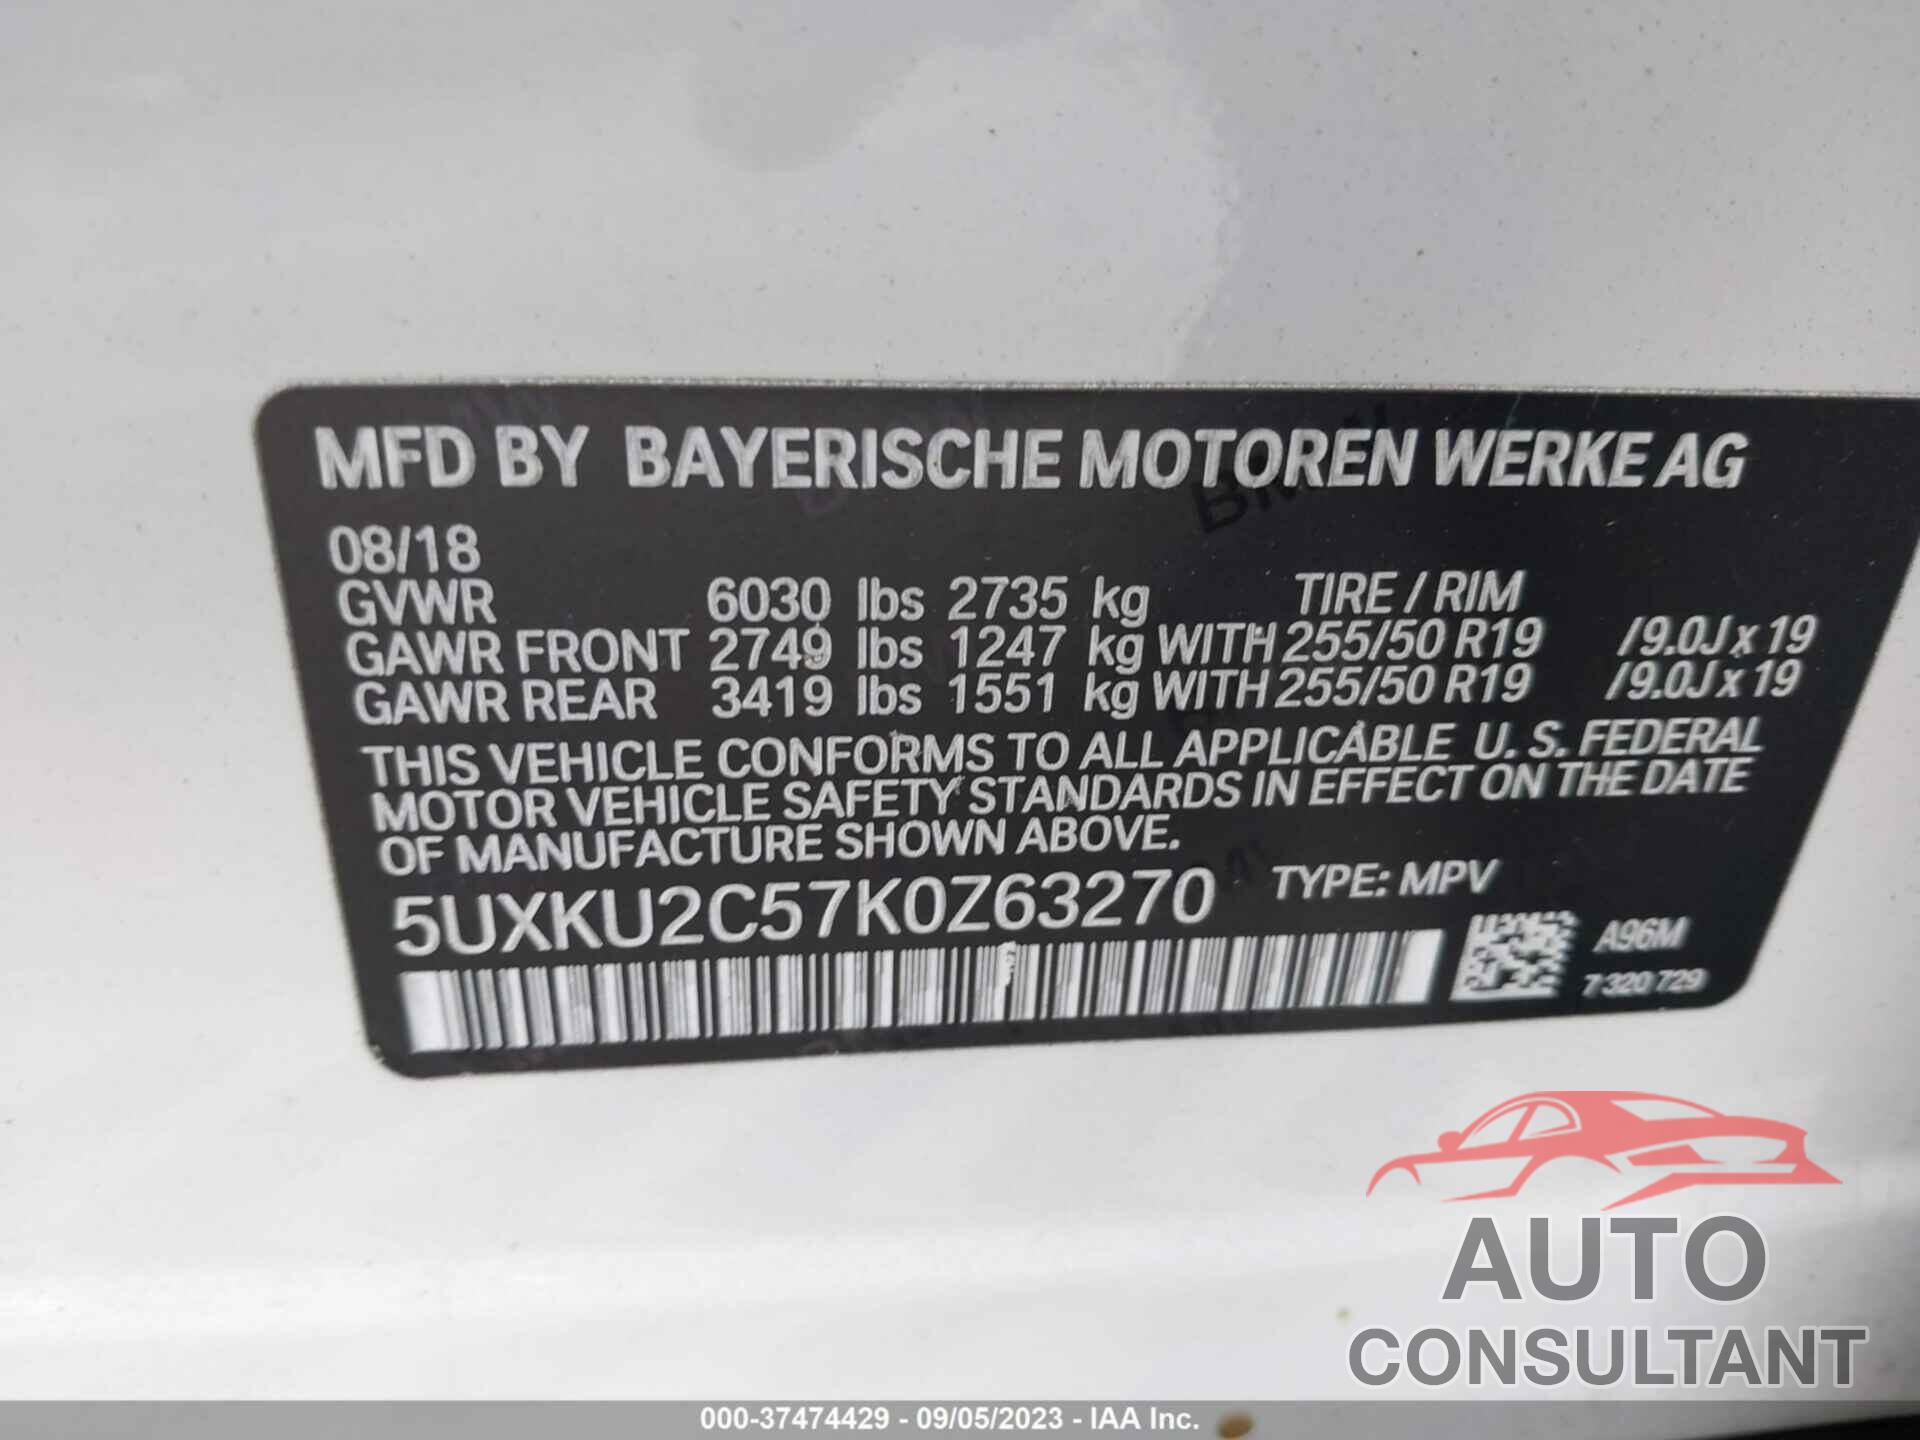 BMW X6 2019 - 5UXKU2C57K0Z63270